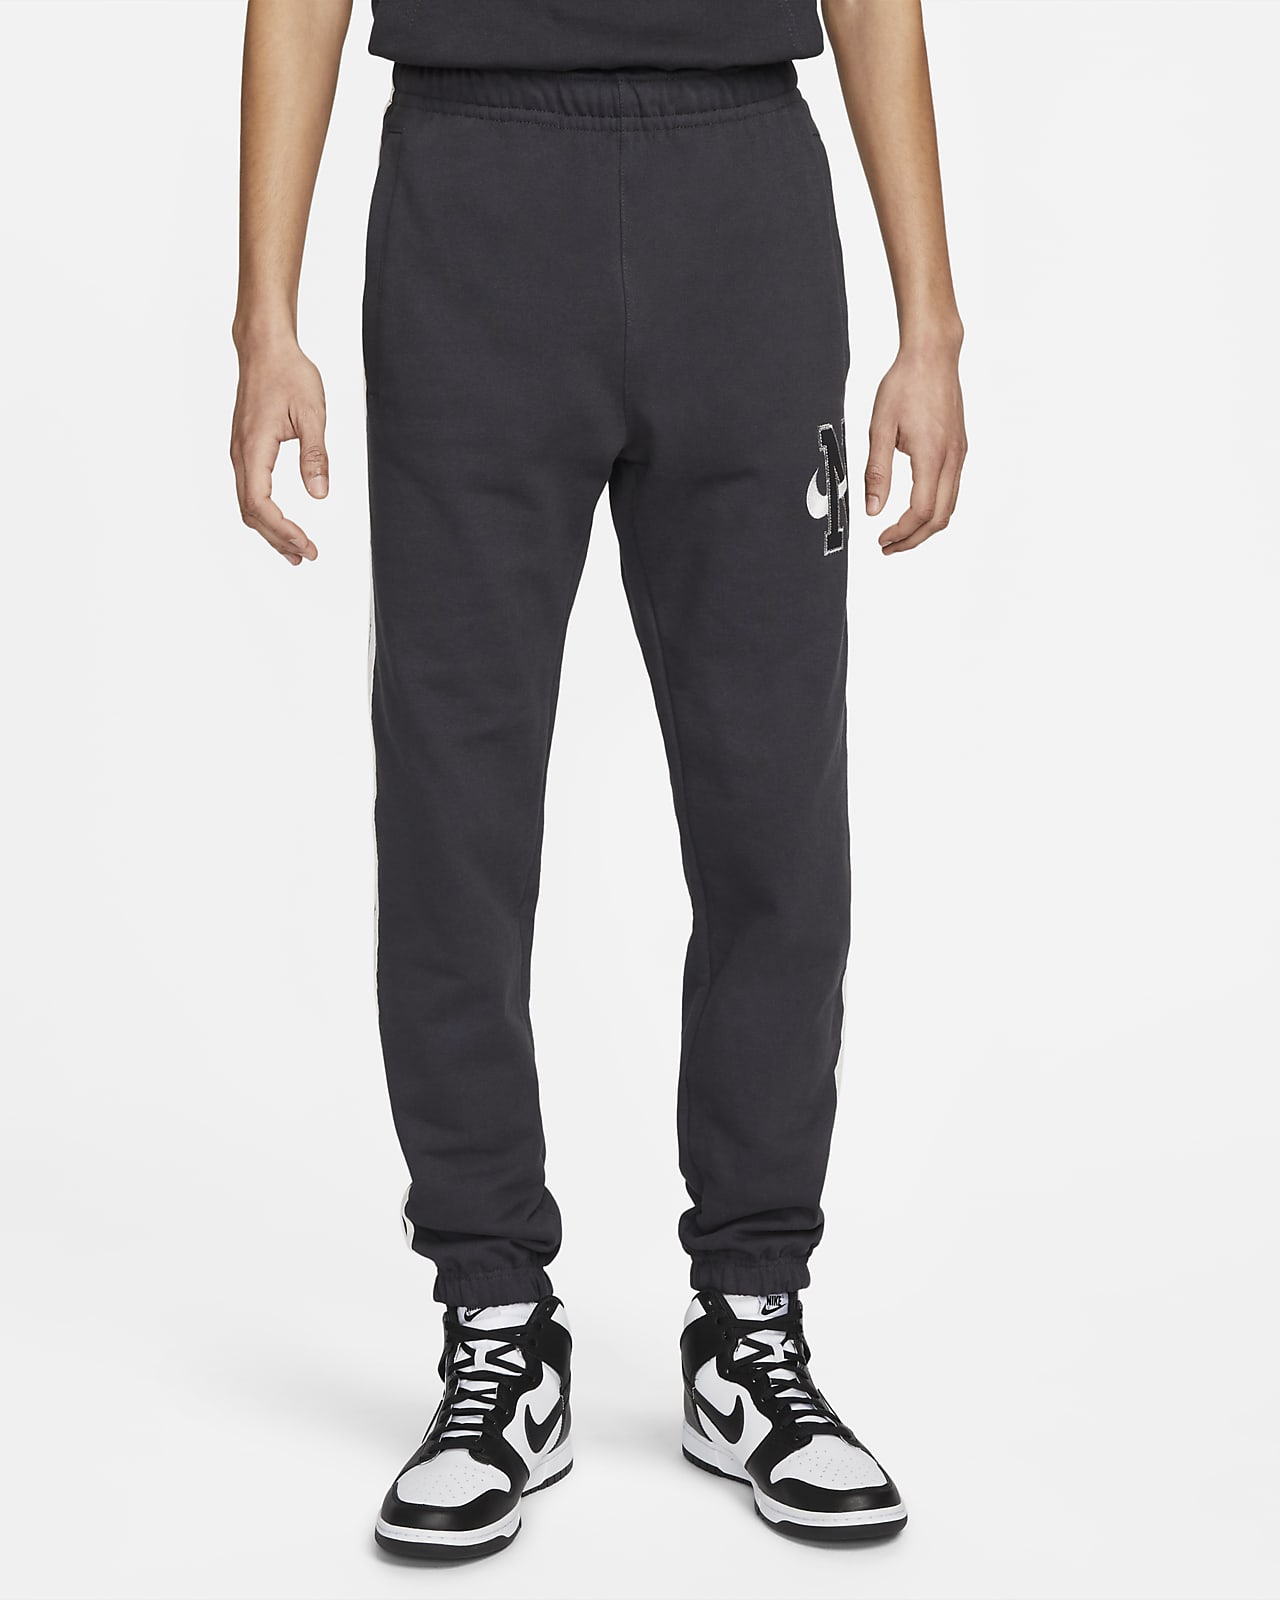 Nike Sportswear Men's Standard Fit Fleece Trousers 